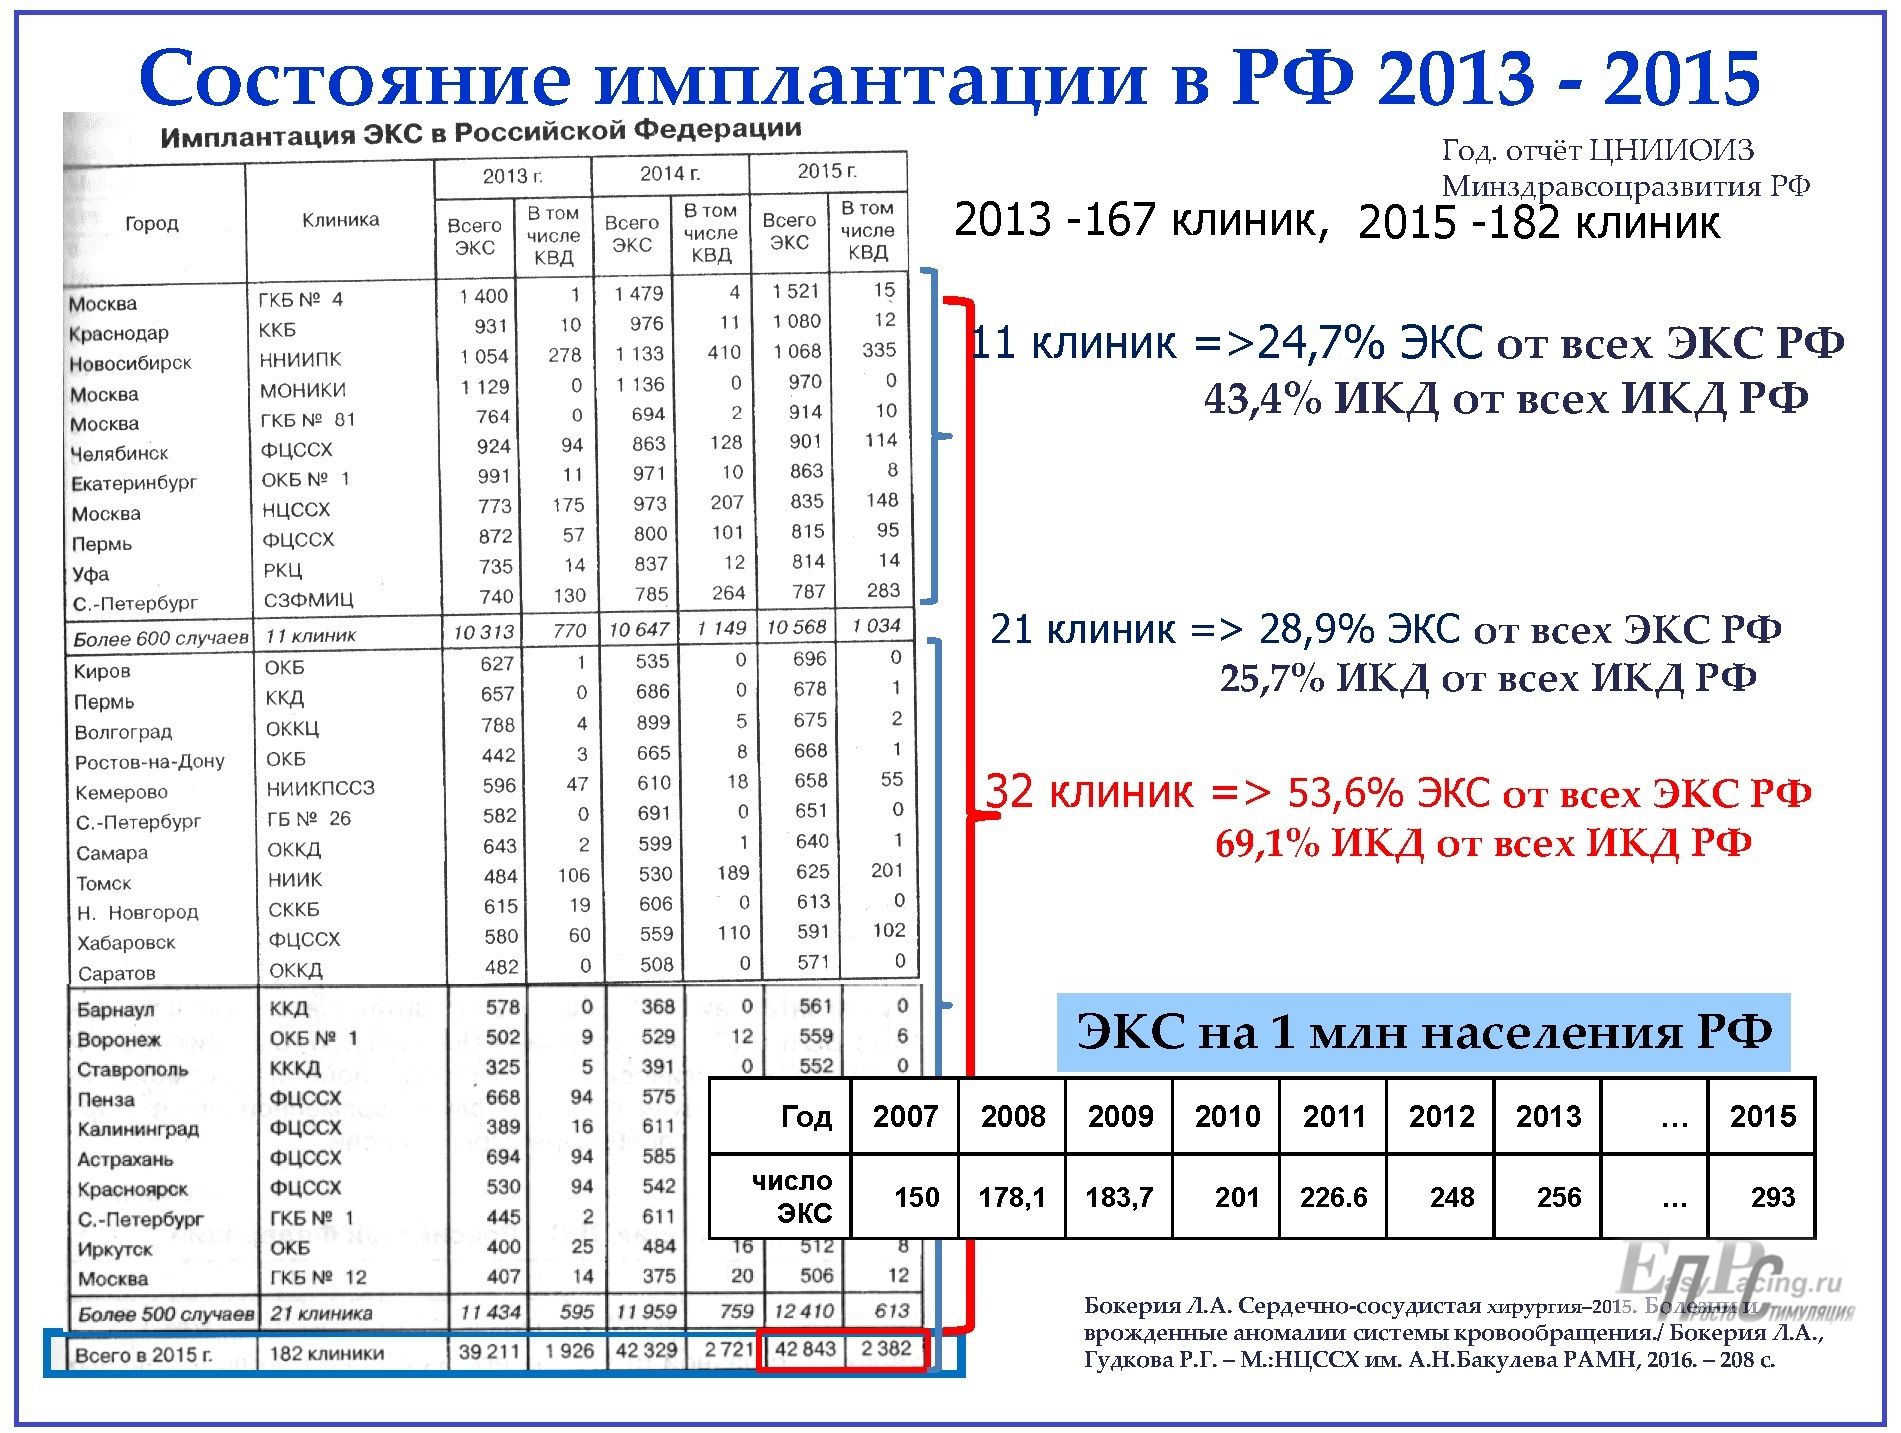 СТАТЬЯ2019_Состояние имплантации ЭКС РФ 2013—2015